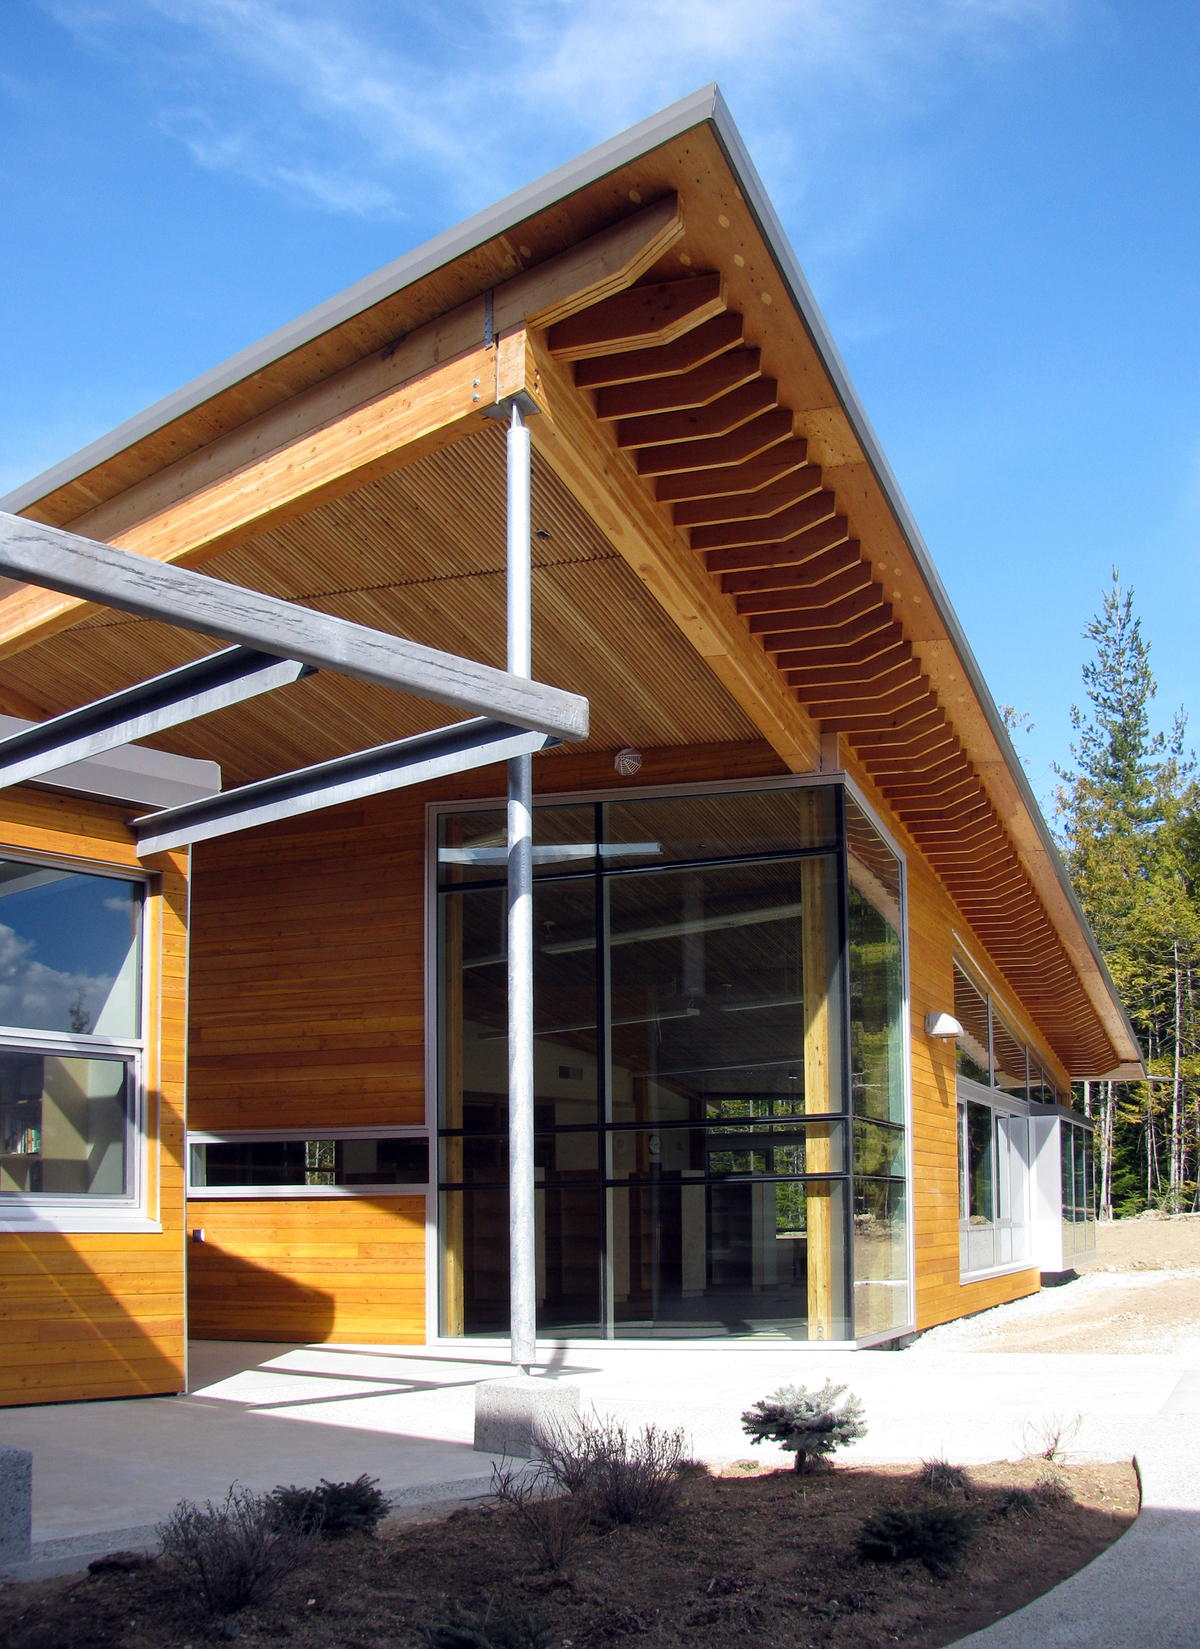 克劳福德湾小学(Crawford Bay Elementary-Secondary School)低层建筑的外景，展示了混合建筑与显著的木材使用，包括镶板、柱子+梁，以及由堆叠的木板和胶合木梁在现场预制的屋顶悬垂